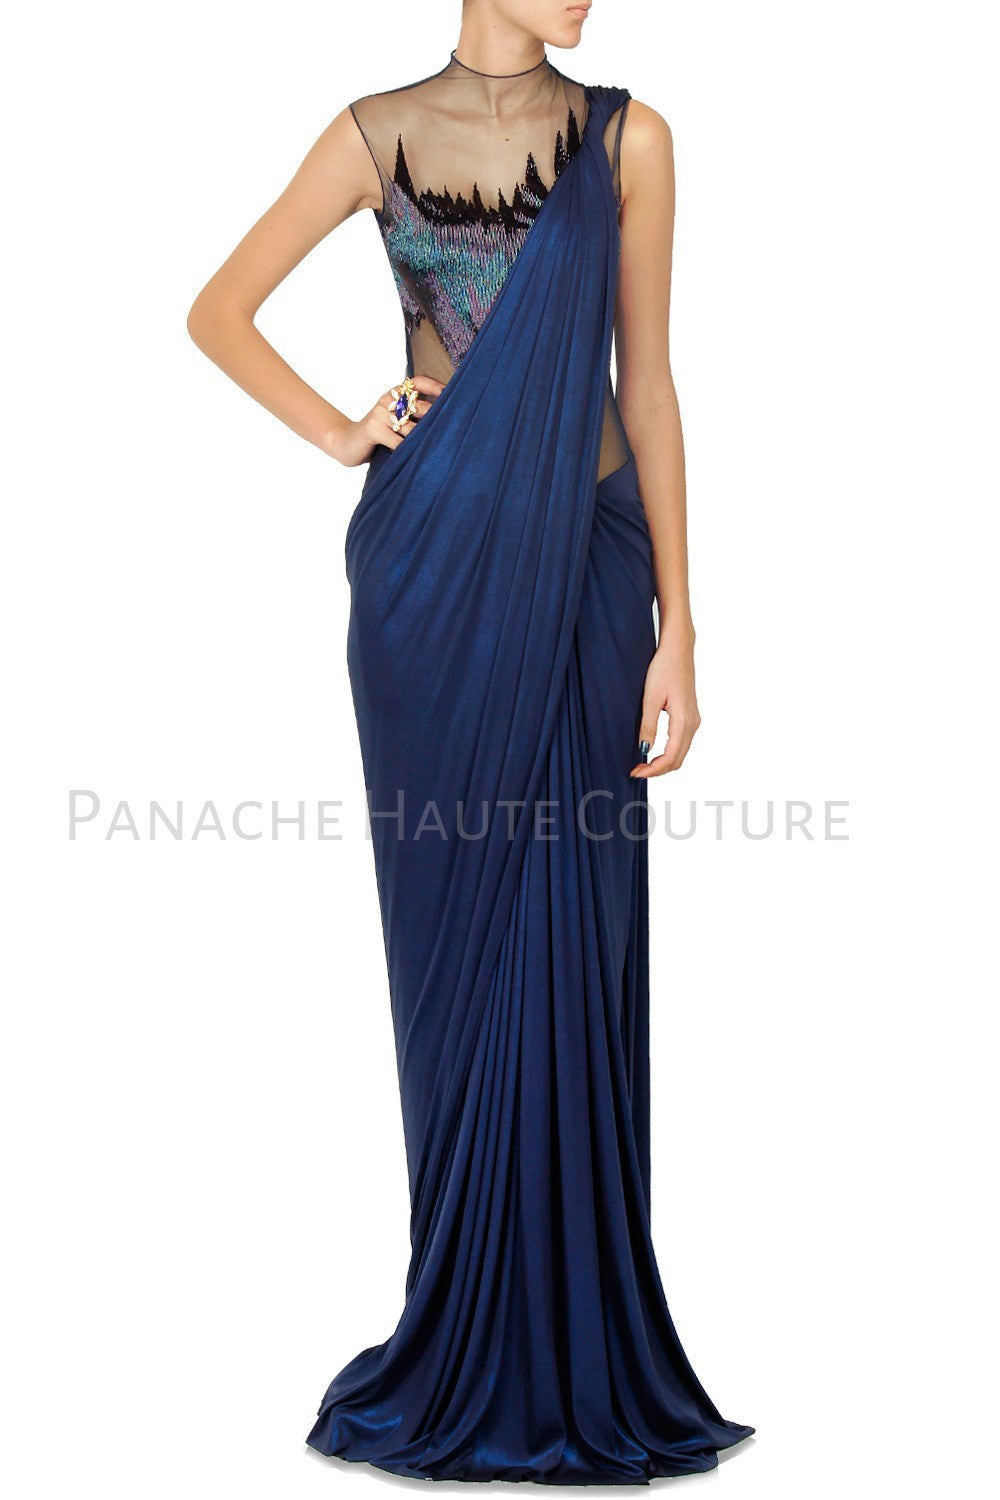 buy saree gown online